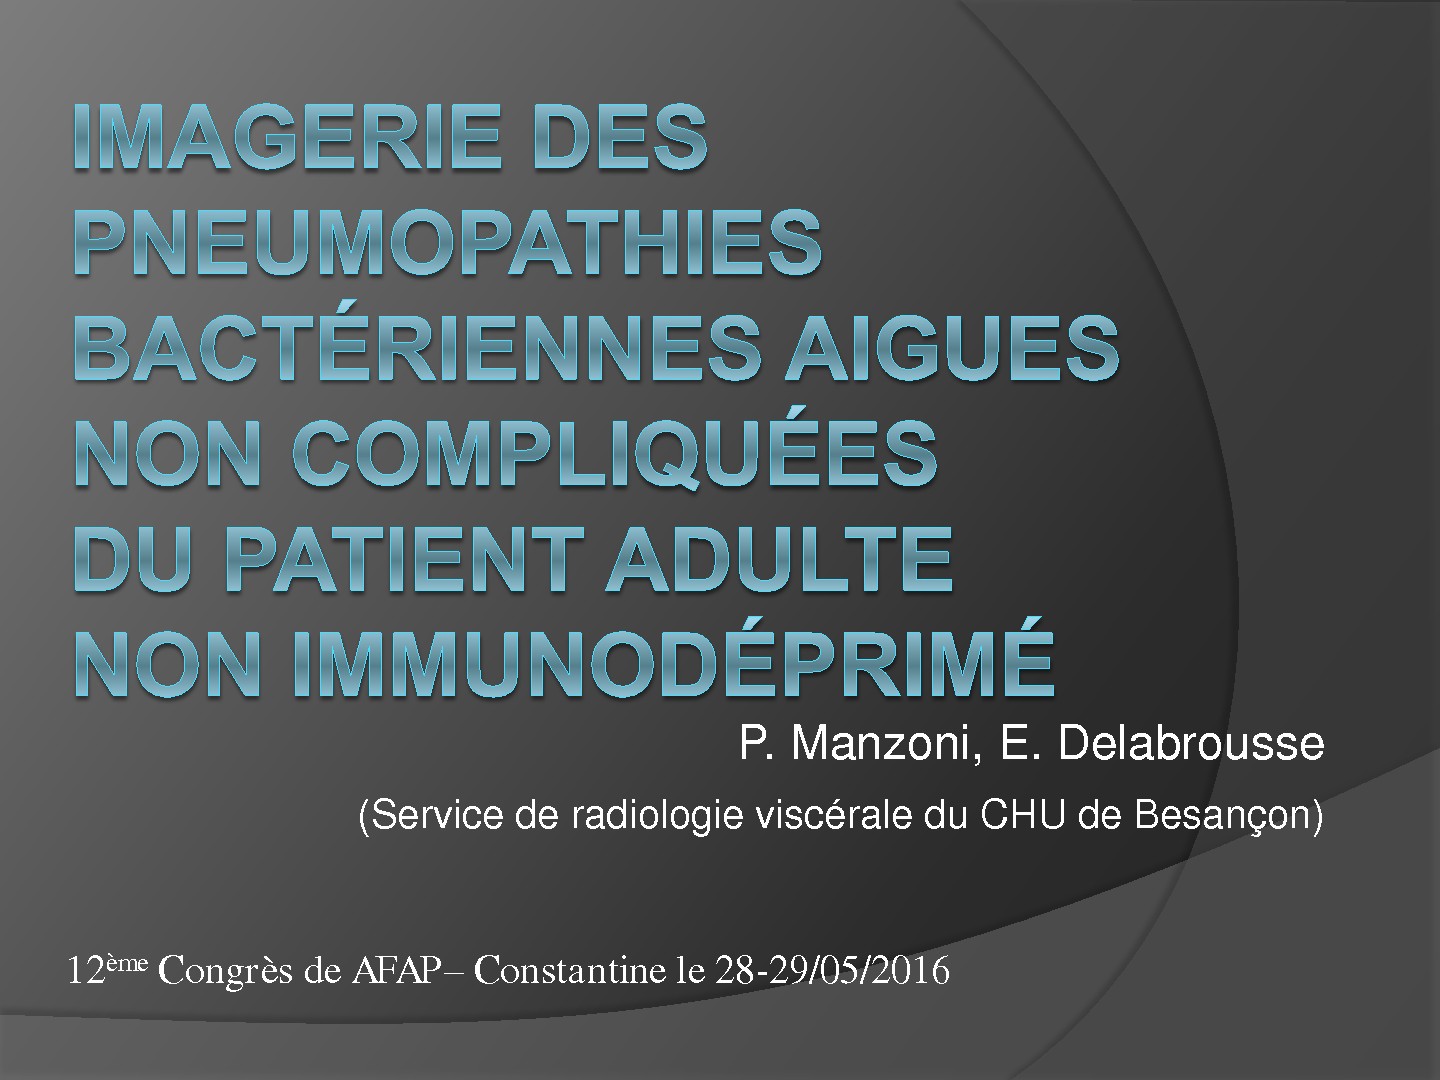 Imagerie des pneumopathies bactériennes aigues non compliquées du patient non immunodéprimé. P. Manzoni, E. Delabrousse